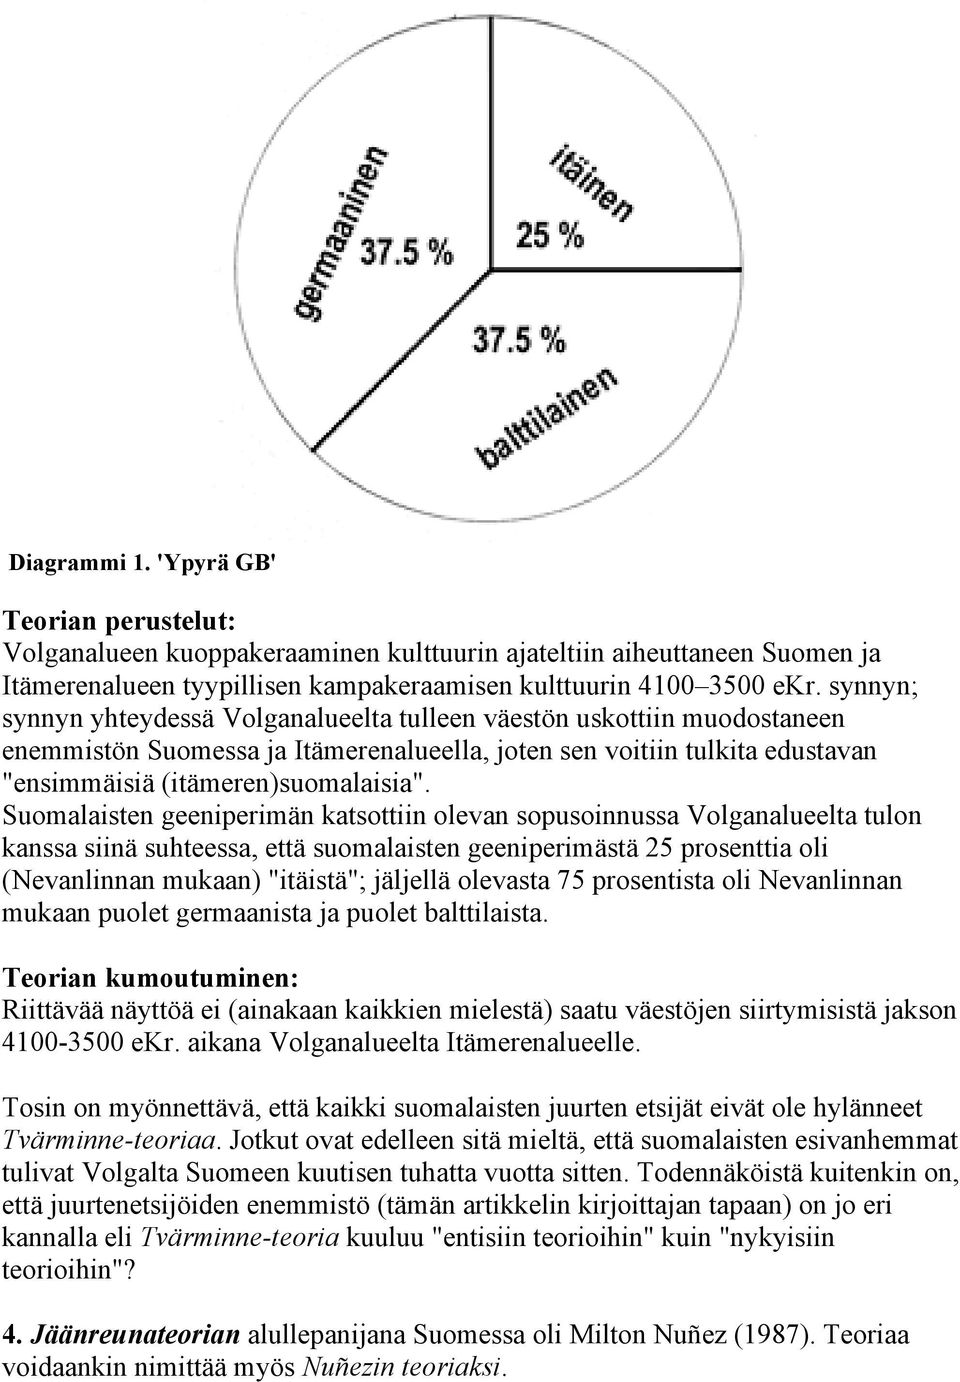 Suomalaisten geeniperimän katsottiin olevan sopusoinnussa Volganalueelta tulon kanssa siinä suhteessa, että suomalaisten geeniperimästä 25 prosenttia oli (Nevanlinnan mukaan) "itäistä"; jäljellä